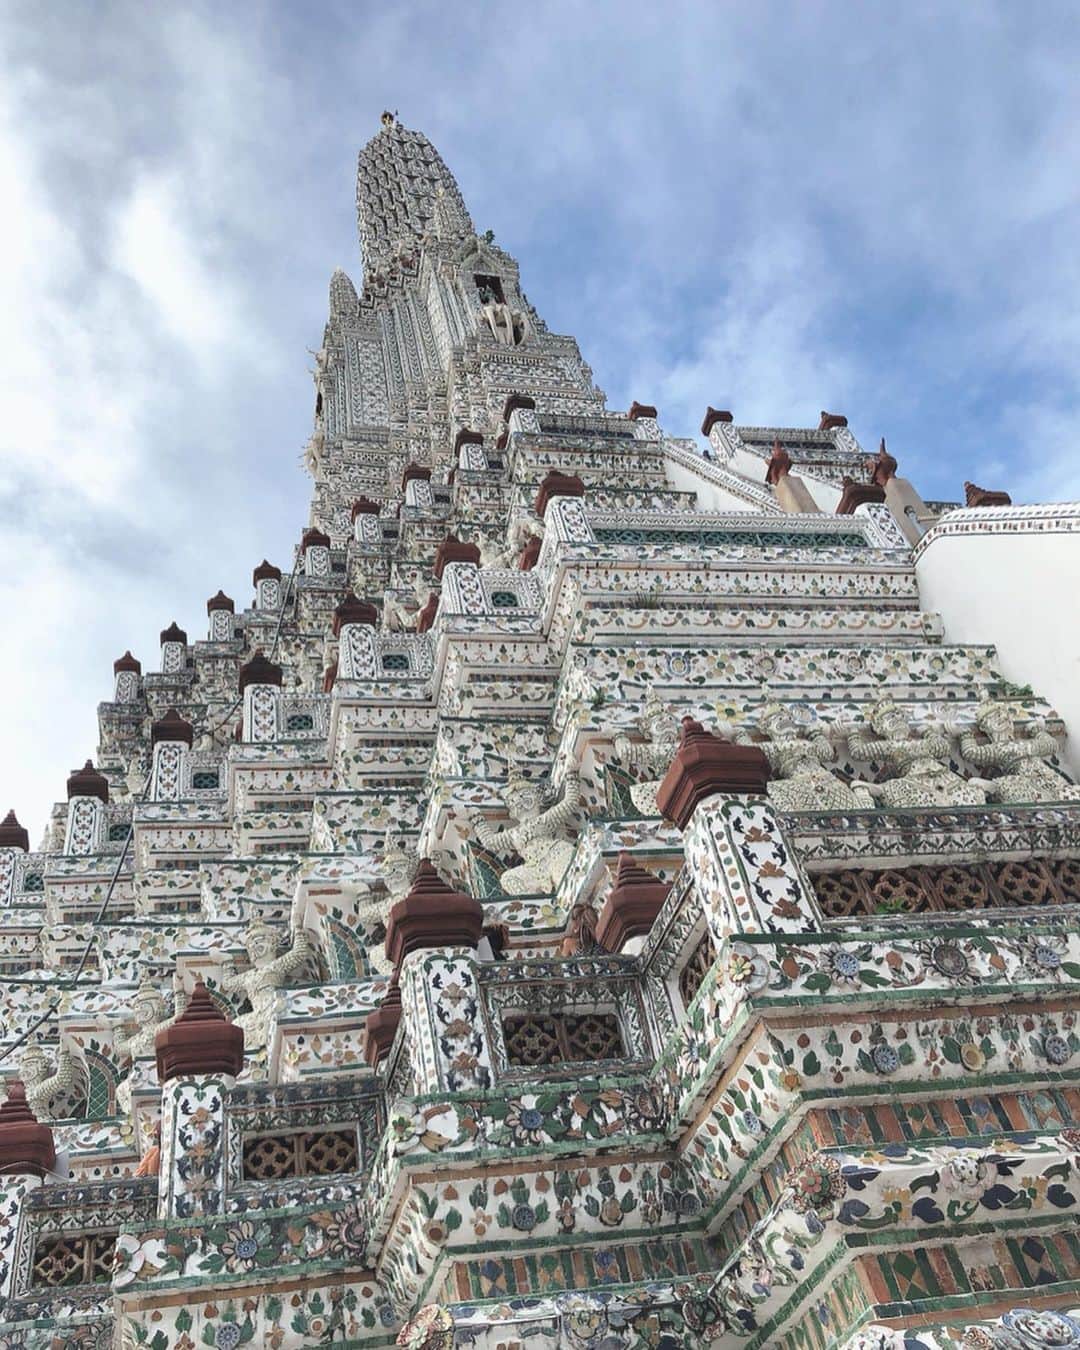 高橋里彩子さんのインスタグラム写真 - (高橋里彩子Instagram)「タイのバンコク市内で﻿ 「ワット・ポー」﻿ 「ワット・プラケオ」と﻿ 並んで三大寺院と言われるのが﻿ この暁の寺を意味する「ワット・アルン」だよ〜♡﻿ ここに行ってきた❤︎﻿ ﻿ ﻿ すごくきれいだった🐥💗﻿ 私はタクシーでいったよ(﹡ˆ﹀ˆ﹡)♡﻿ 水上バスで行くほうが良かったかも😩💗﻿ ﻿ ﻿ ここは神聖な場所だから肌を見せたりしちゃいけなくて、﻿ 肩を出してたり、肌の露出が多い服は﻿ ストールとかで隠さないといけないの！﻿ ﻿ 借りれる？買うんだけど、﻿ それを外しちゃったり﻿ ちょっとでも見えたりすると﻿ 係員さんが﻿ ピピッー！！ってすごい怒るから﻿ 服装には気をつけてね( ˙-˙ )！﻿ ﻿ 他の観光客の方がすごい怒られてた😳💦﻿ ﻿ ﻿ そのあとはそのままナイトマーケットのあるアジアティークにいったよ★﻿ ﻿ ﻿ そこから水上バス？みたいなのが出てて﻿ タクシーとかで行くより安く行けた！﻿ ﻿ この流れすごいおすすめ⸜(๑⃙⃘'ᵕ'๑⃙⃘)⸝⋆*﻿ ﻿ ﻿ ﻿ ﻿ このナイトマーケットは新しくできたみたいで﻿ すごくキレイなおしゃれなところだった♥️♥️﻿ ﻿ ﻿ ここデートスポットにもなってて﻿ 1500店舗あるから﻿ ごはん屋さんも雑貨屋さんも、服も、いろいろあって楽しかった💞﻿ ﻿ どっちかと言えばおしゃれな感じ★﻿ ﻿ ﻿ 安さをもとめるなら﻿ 鉄道市場💗💗﻿ ﻿ ﻿ ﻿ ここもすごいマーケットの数で﻿ 安くて面白かった✧‧˚﻿ ﻿ ﻿ それにその近くにあるショッピングモールの上から見る﻿ 景色がきれいすぎてやばかった！﻿ ﻿ ﻿ ﻿ これ知ってるの日本人だけみたい🤣♥️﻿ ﻿ ﻿ これは感動したよ〜🌸﻿ ﻿ ここには行く価値あり(*´꒳`*)★﻿ ﻿ 最初がアジアティーク市場で、﻿ 鉄道市場♡﻿ ﻿ ﻿ それぞれ違った良さがあるから、﻿ 目的によっていってみると面白いよ(っ´ω`c)♡﻿ ﻿ ﻿ ﻿ ⸜❤︎⸝〜𝚌𝚘𝚍𝚎〜⸜❤︎⸝﻿ ﻿ ❥ワンピース﻿ #マメドリミドリ ﻿ ﻿ ❥帽子﻿ タイ購入﻿ #プラチナムファッションモール﻿ ﻿ ﻿ ❥サングラス﻿ @esutoreja﻿ #esutoreja﻿ ﻿ ﻿ ﻿ ❥サンダル﻿ 台湾購入﻿ #台北地下街﻿ ﻿ ﻿ ﻿ ﻿ ﻿ ↓9月9日まで長いかな🤣？﻿ 短くしようか迷い中…笑﻿ ﻿ ﻿ ﻿ ♡〜🎁プレゼント企画🎁〜♡中♡﻿ ﻿ ﻿ ﻿ ﻿ ①シーシャン	スキンケア﻿ タナカ ゴールドパウダー マスク﻿ ﻿ ﻿ ◆使い方﻿ ﻿ 1. ティースプーンに軽く一杯分の量のパウダーに水を加え均一になるまでかき混ぜます。﻿ 「2：1（粉：水）」が推奨です。﻿ 2. 目や敏感な部分を避けて顔に塗り、15〜30分間そのまま放置します。﻿ 3. 洗顔をし、きれいに洗い流して下さい。﻿ ﻿ ◆効果﻿ ﻿ ・オイルコントロールとニキビ対策、栄養補給が同時にできるタナカゴールドパウダー。﻿ ﻿ ・混合肌、オイリー肌の方に最適﻿ ﻿ ﻿ ﻿ ﻿ ﻿ ② タイNo1コスメティックの Mistine♡﻿ Super Modelのマスカラ﻿ ﻿ 黒のマスカラだけでわりとボリュームがでる！﻿ しかもフィルムタイプなのでにじまなしい、﻿ モチが良くていい感じ！﻿ ﻿ ブラシが太めなので下まつ毛には塗りにくいかな🤨﻿ ﻿ 繊維の方は、重ねづけしていくとマスカラだけでは出せない長さがでます！﻿ ﻿ ﻿ ﻿ ③Alice+OLIVIA XOXO メイベリン マスカラ﻿ ﻿ 「アリス アンド オリビア（alice + olivia）」とコラボレーションのマスカラ♥️﻿ ﻿ 「メイベリン ボリューム エクスプレス ハイパーカール ウォータープルーフ」﻿ 日本でも売ってたみたい😭🍓﻿ ﻿ 限定品なのでぜひぜひ💋﻿ ﻿ ﻿ ④sasi jolly sweet lip tint﻿ タイで出たばかりの﻿ リップティント♡﻿ 全然落ちなくてめっちゃ良かった&パッケージが可愛かったので買いましたぁ♥️﻿ ﻿ 色はlovelyPeach﻿ オレンジっぽい色味💗﻿ ﻿ テスター可愛かった✨💞﻿ ﻿ どれも私も同じの買ったからオソロ🤣♥️﻿ ﻿ ﻿ ★応募方法★﻿ ﻿ 詳しくは前回の記事見てね♡﻿ ﻿ ﻿ ﻿ ﻿ ﻿ #タイ旅行 #バンコク旅行 #バンコク #お土産プレゼント #プレゼントキャンペーン #タイコスメ #タイ購入品 #タビジョ #バンコクお土産﻿ #コスメプレゼント #プレゼント企画 #バンコクライフ #海外旅行  #東南アジア旅行 #旅行ファッション #海外ファッション #ナイトマーケット #鉄道市場 #ワットアルン #ワンピース #ワンピースコーデ #赤ワンピース #ไทย #เดรสผ้าไทย #เครื่องสำอางค์」9月1日 21時58分 - konkonwanwan